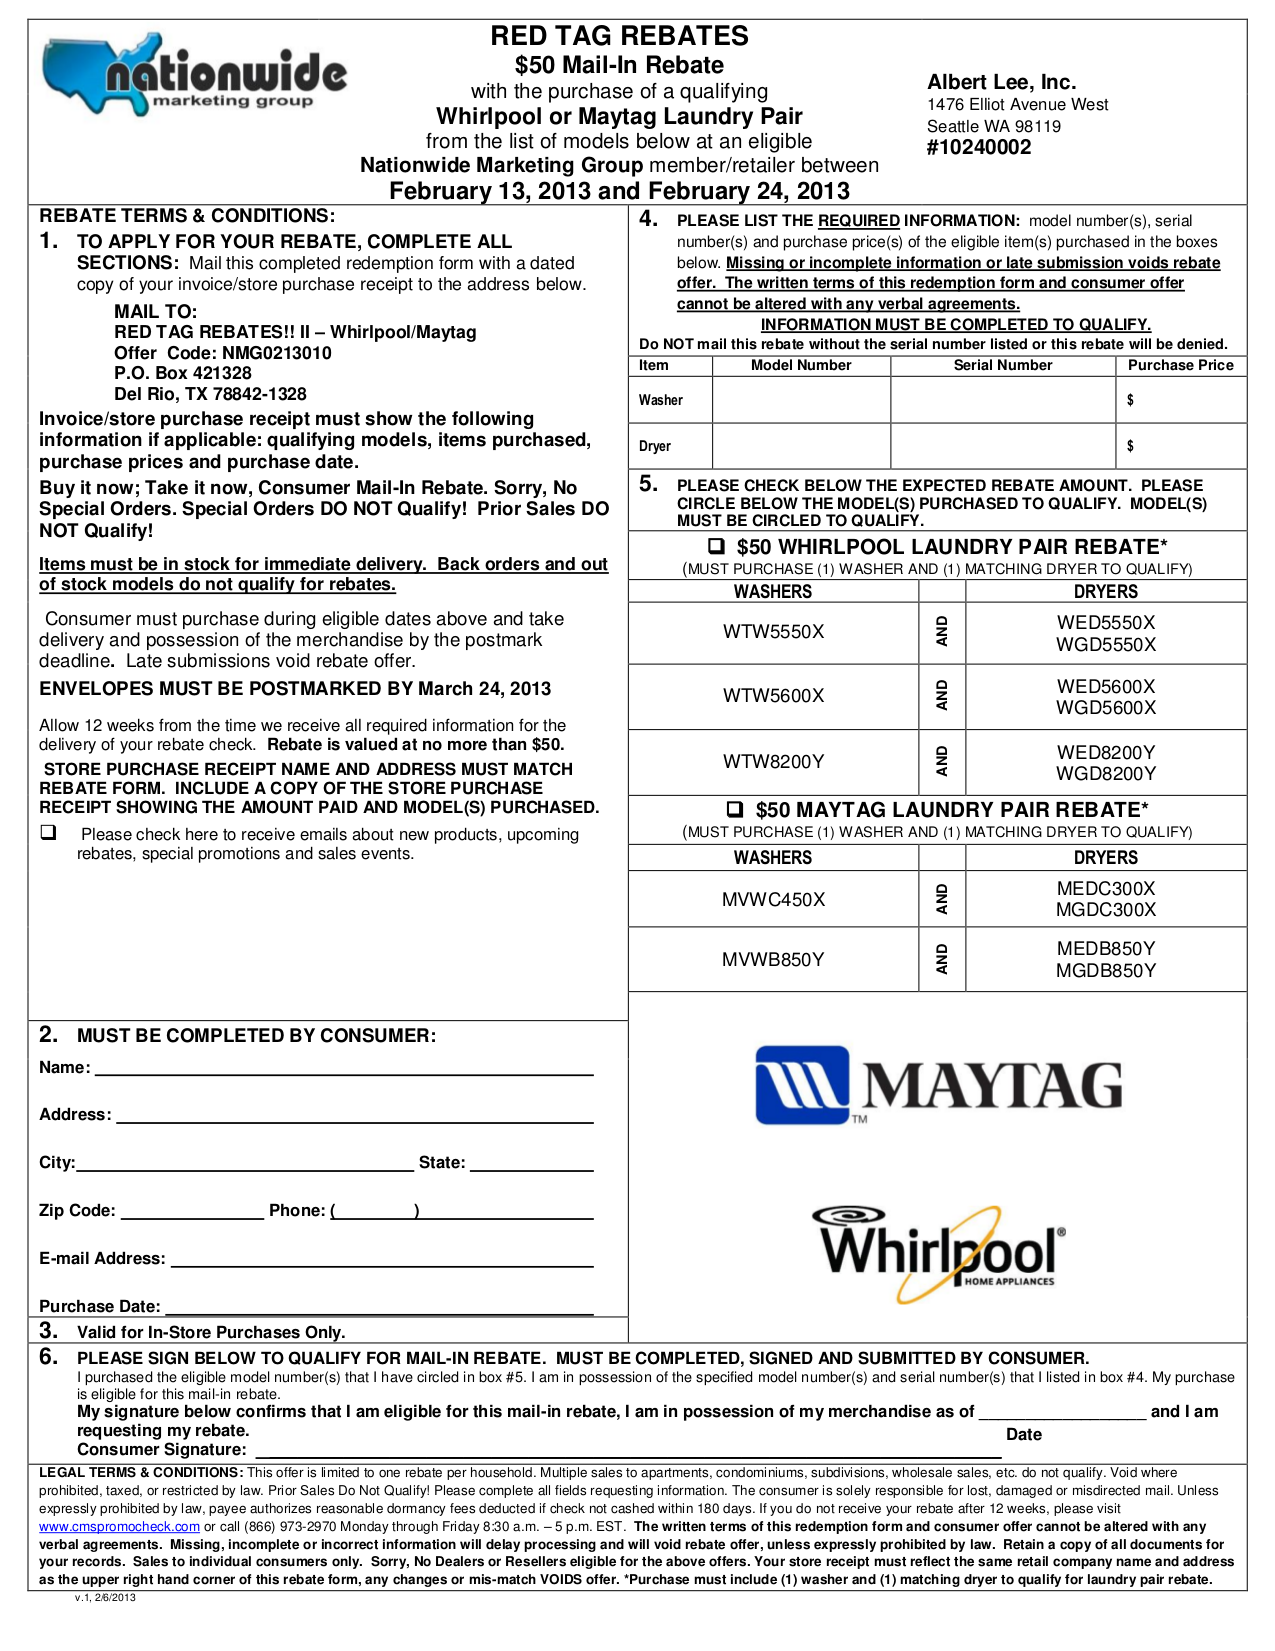 pdf-manual-for-maytag-dryer-medb850y